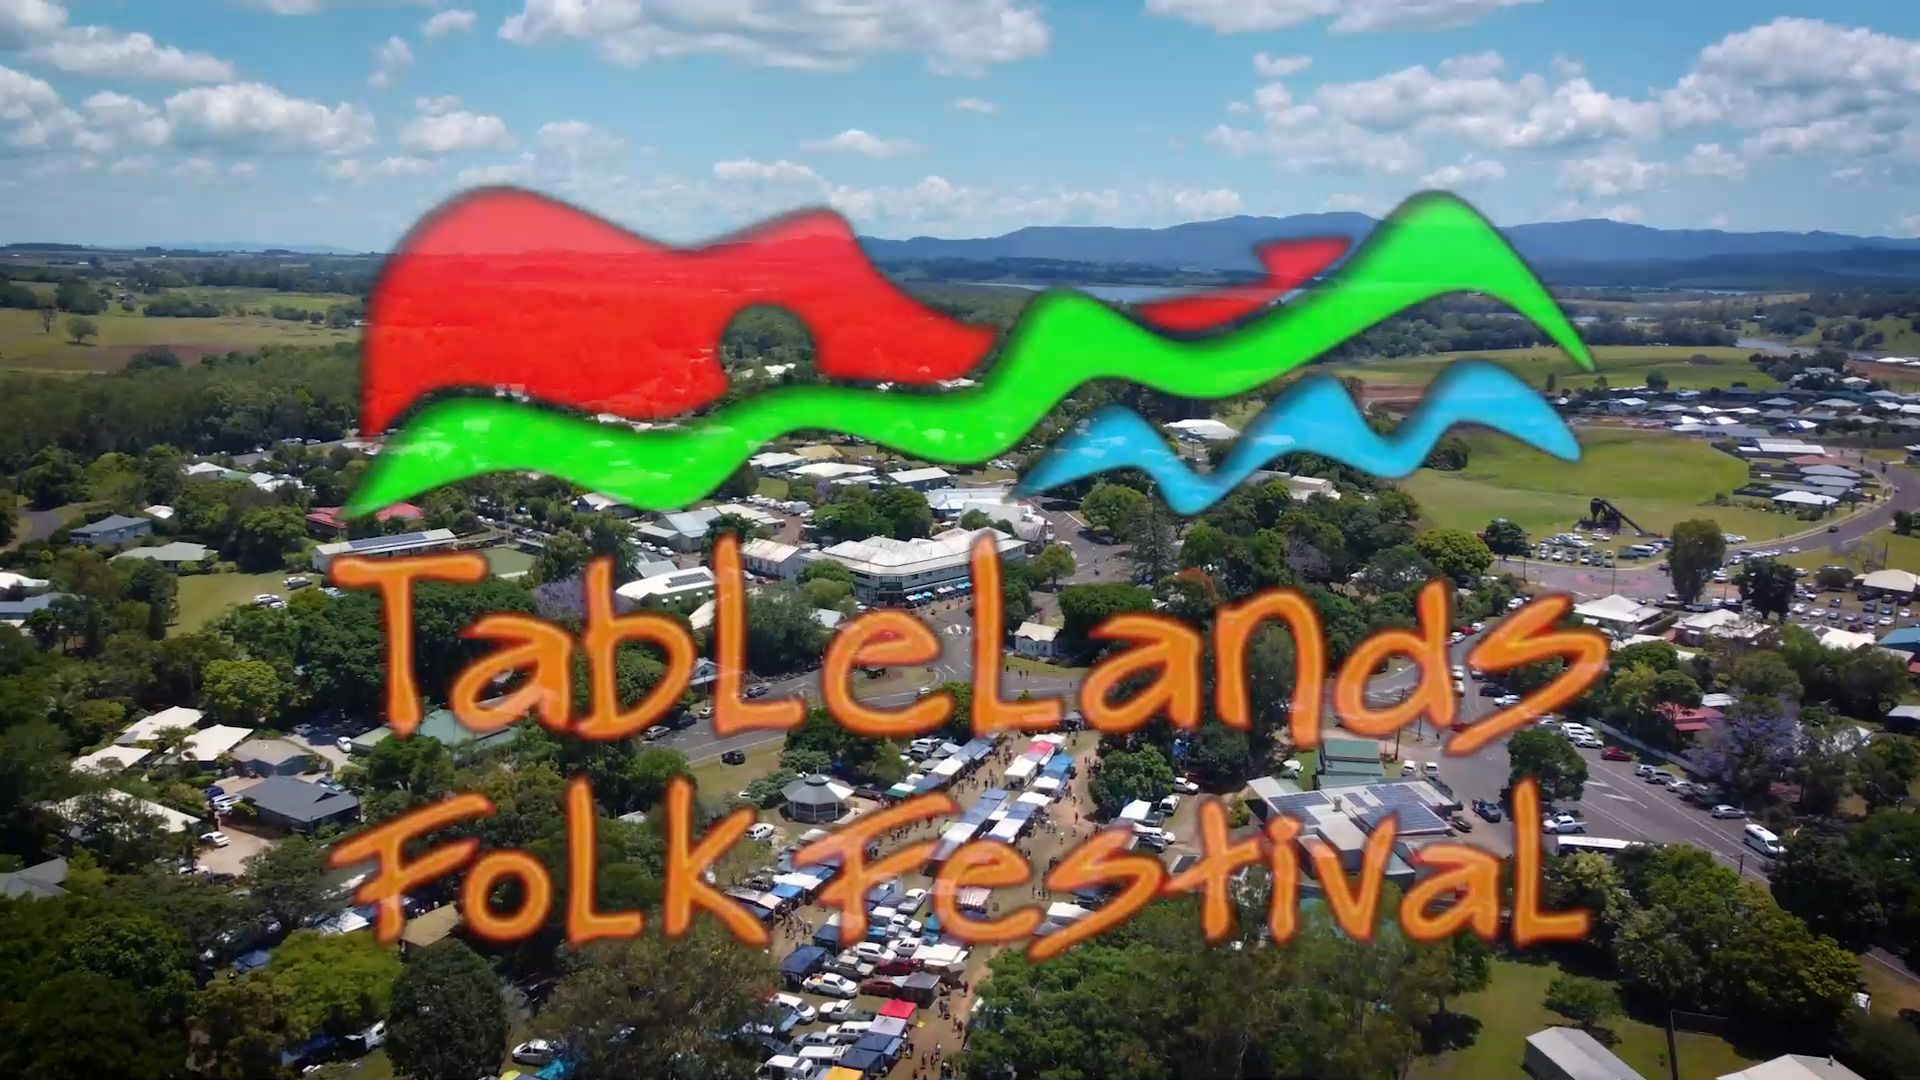 LIVE at the 2022 Tablelands Folk Festival